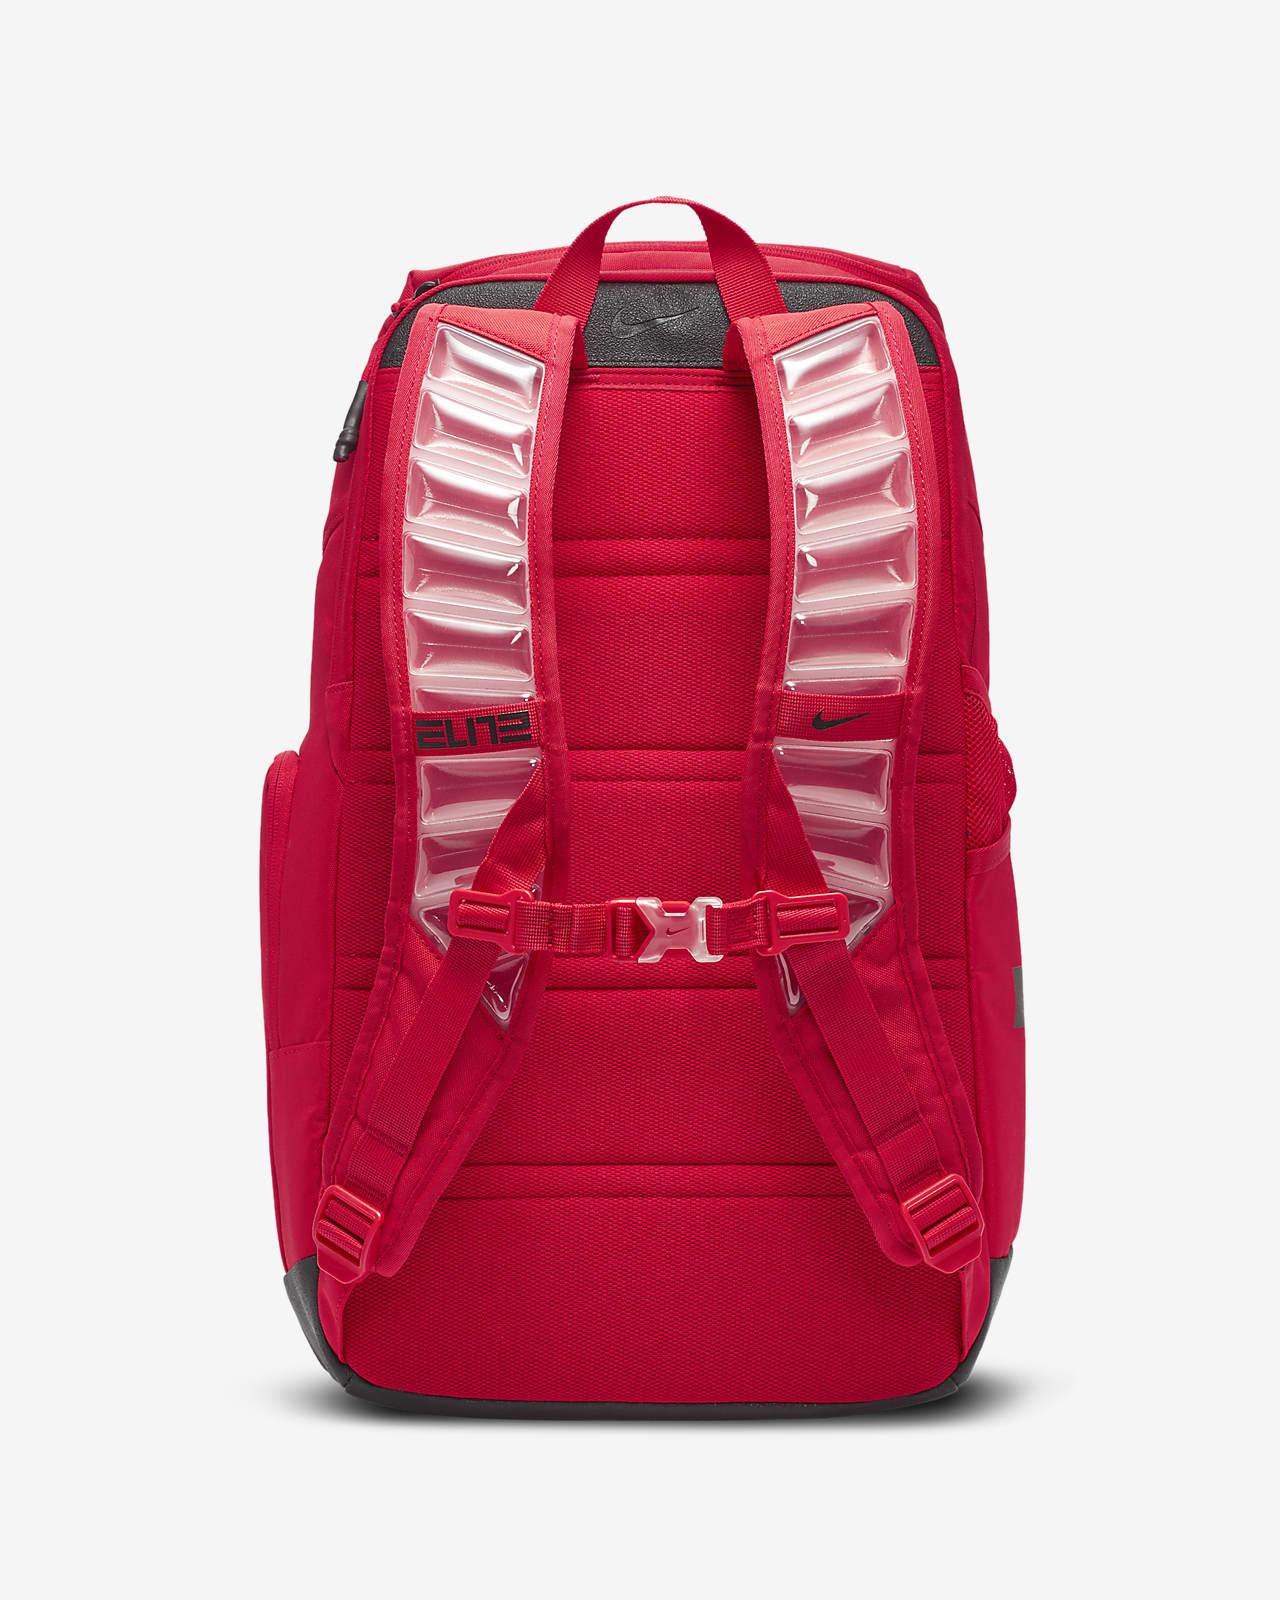 ذاب nike backpack red 